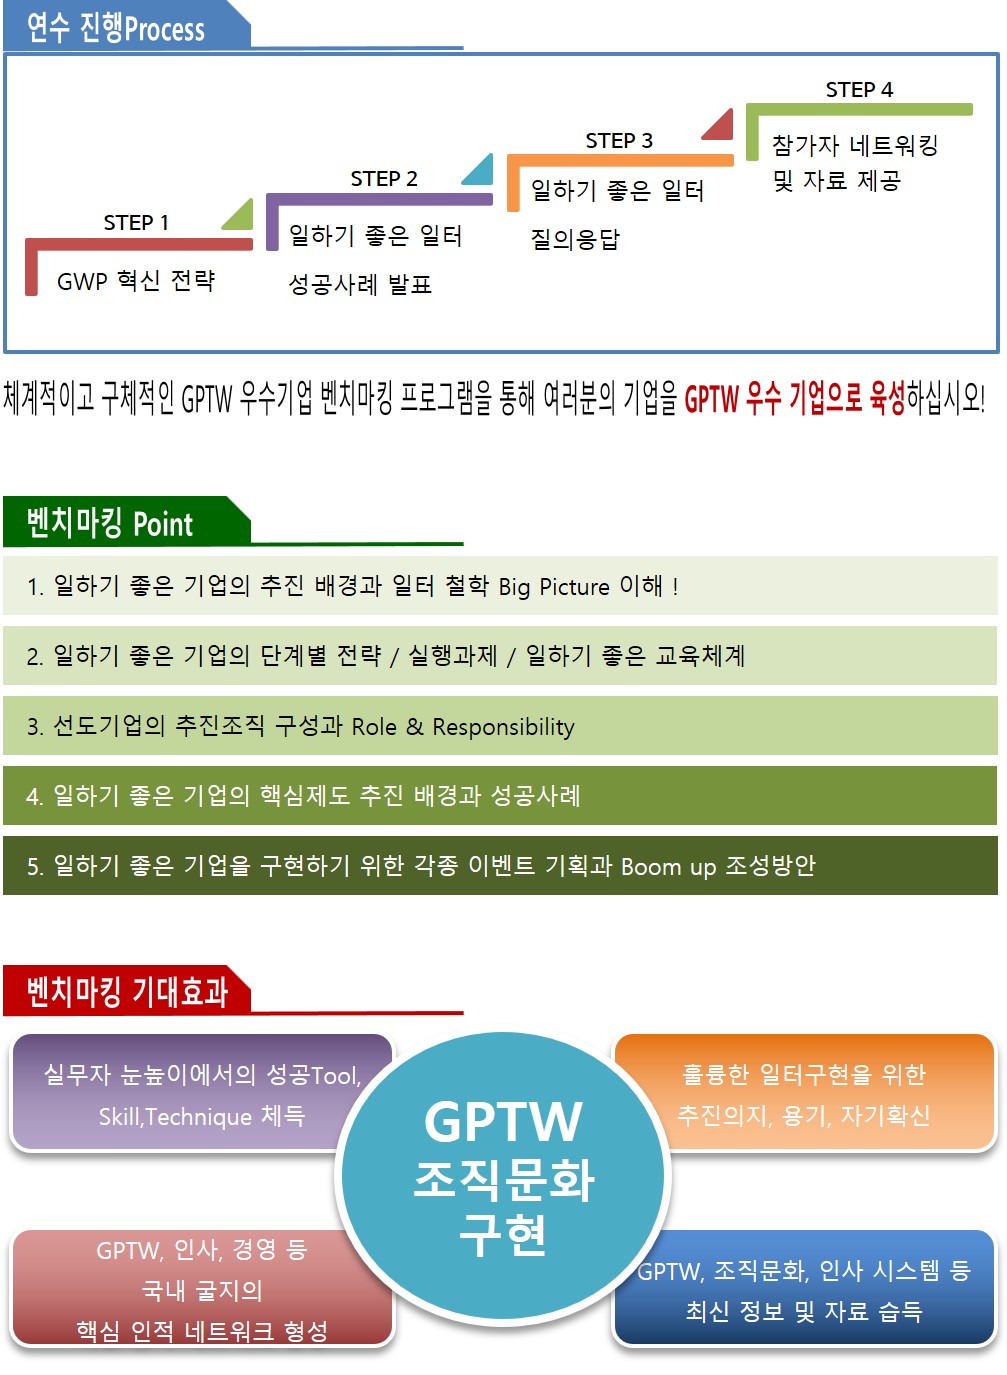 2022_대한민국_GPTW_최우수기업_벤치마킹_연수1.jpg